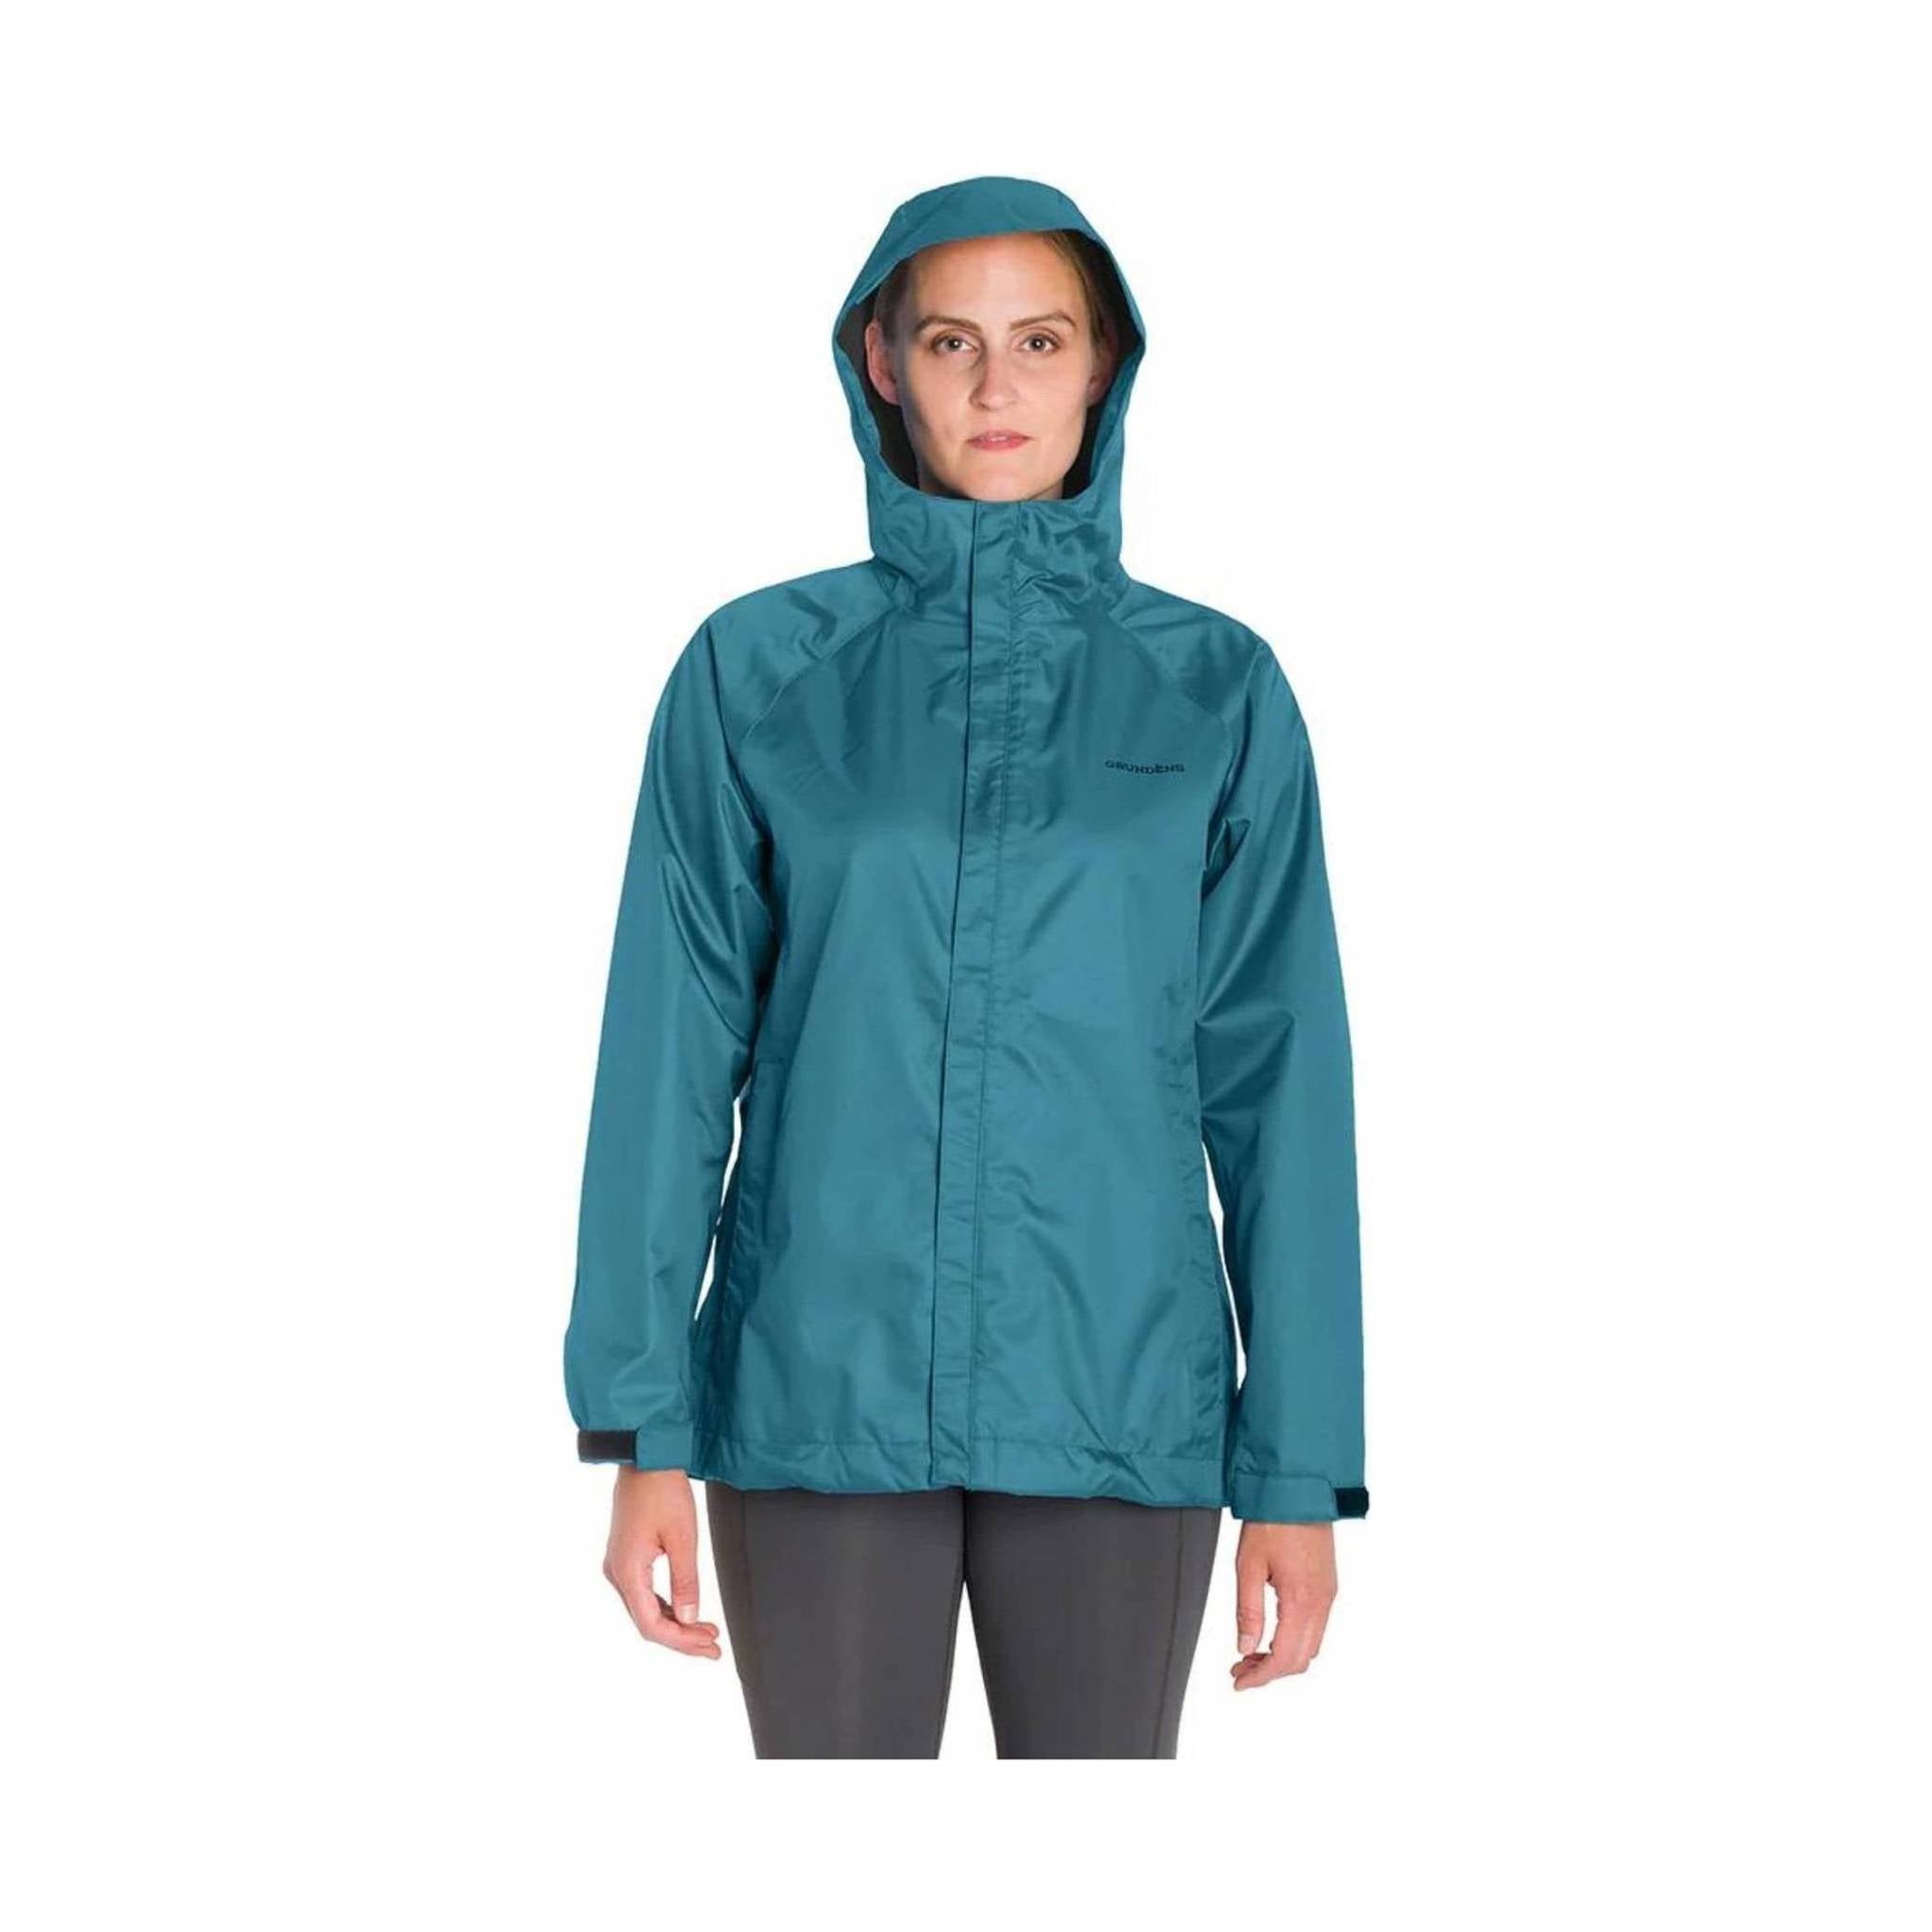 Grundéns Women's Weather Watch Jacket, Updated